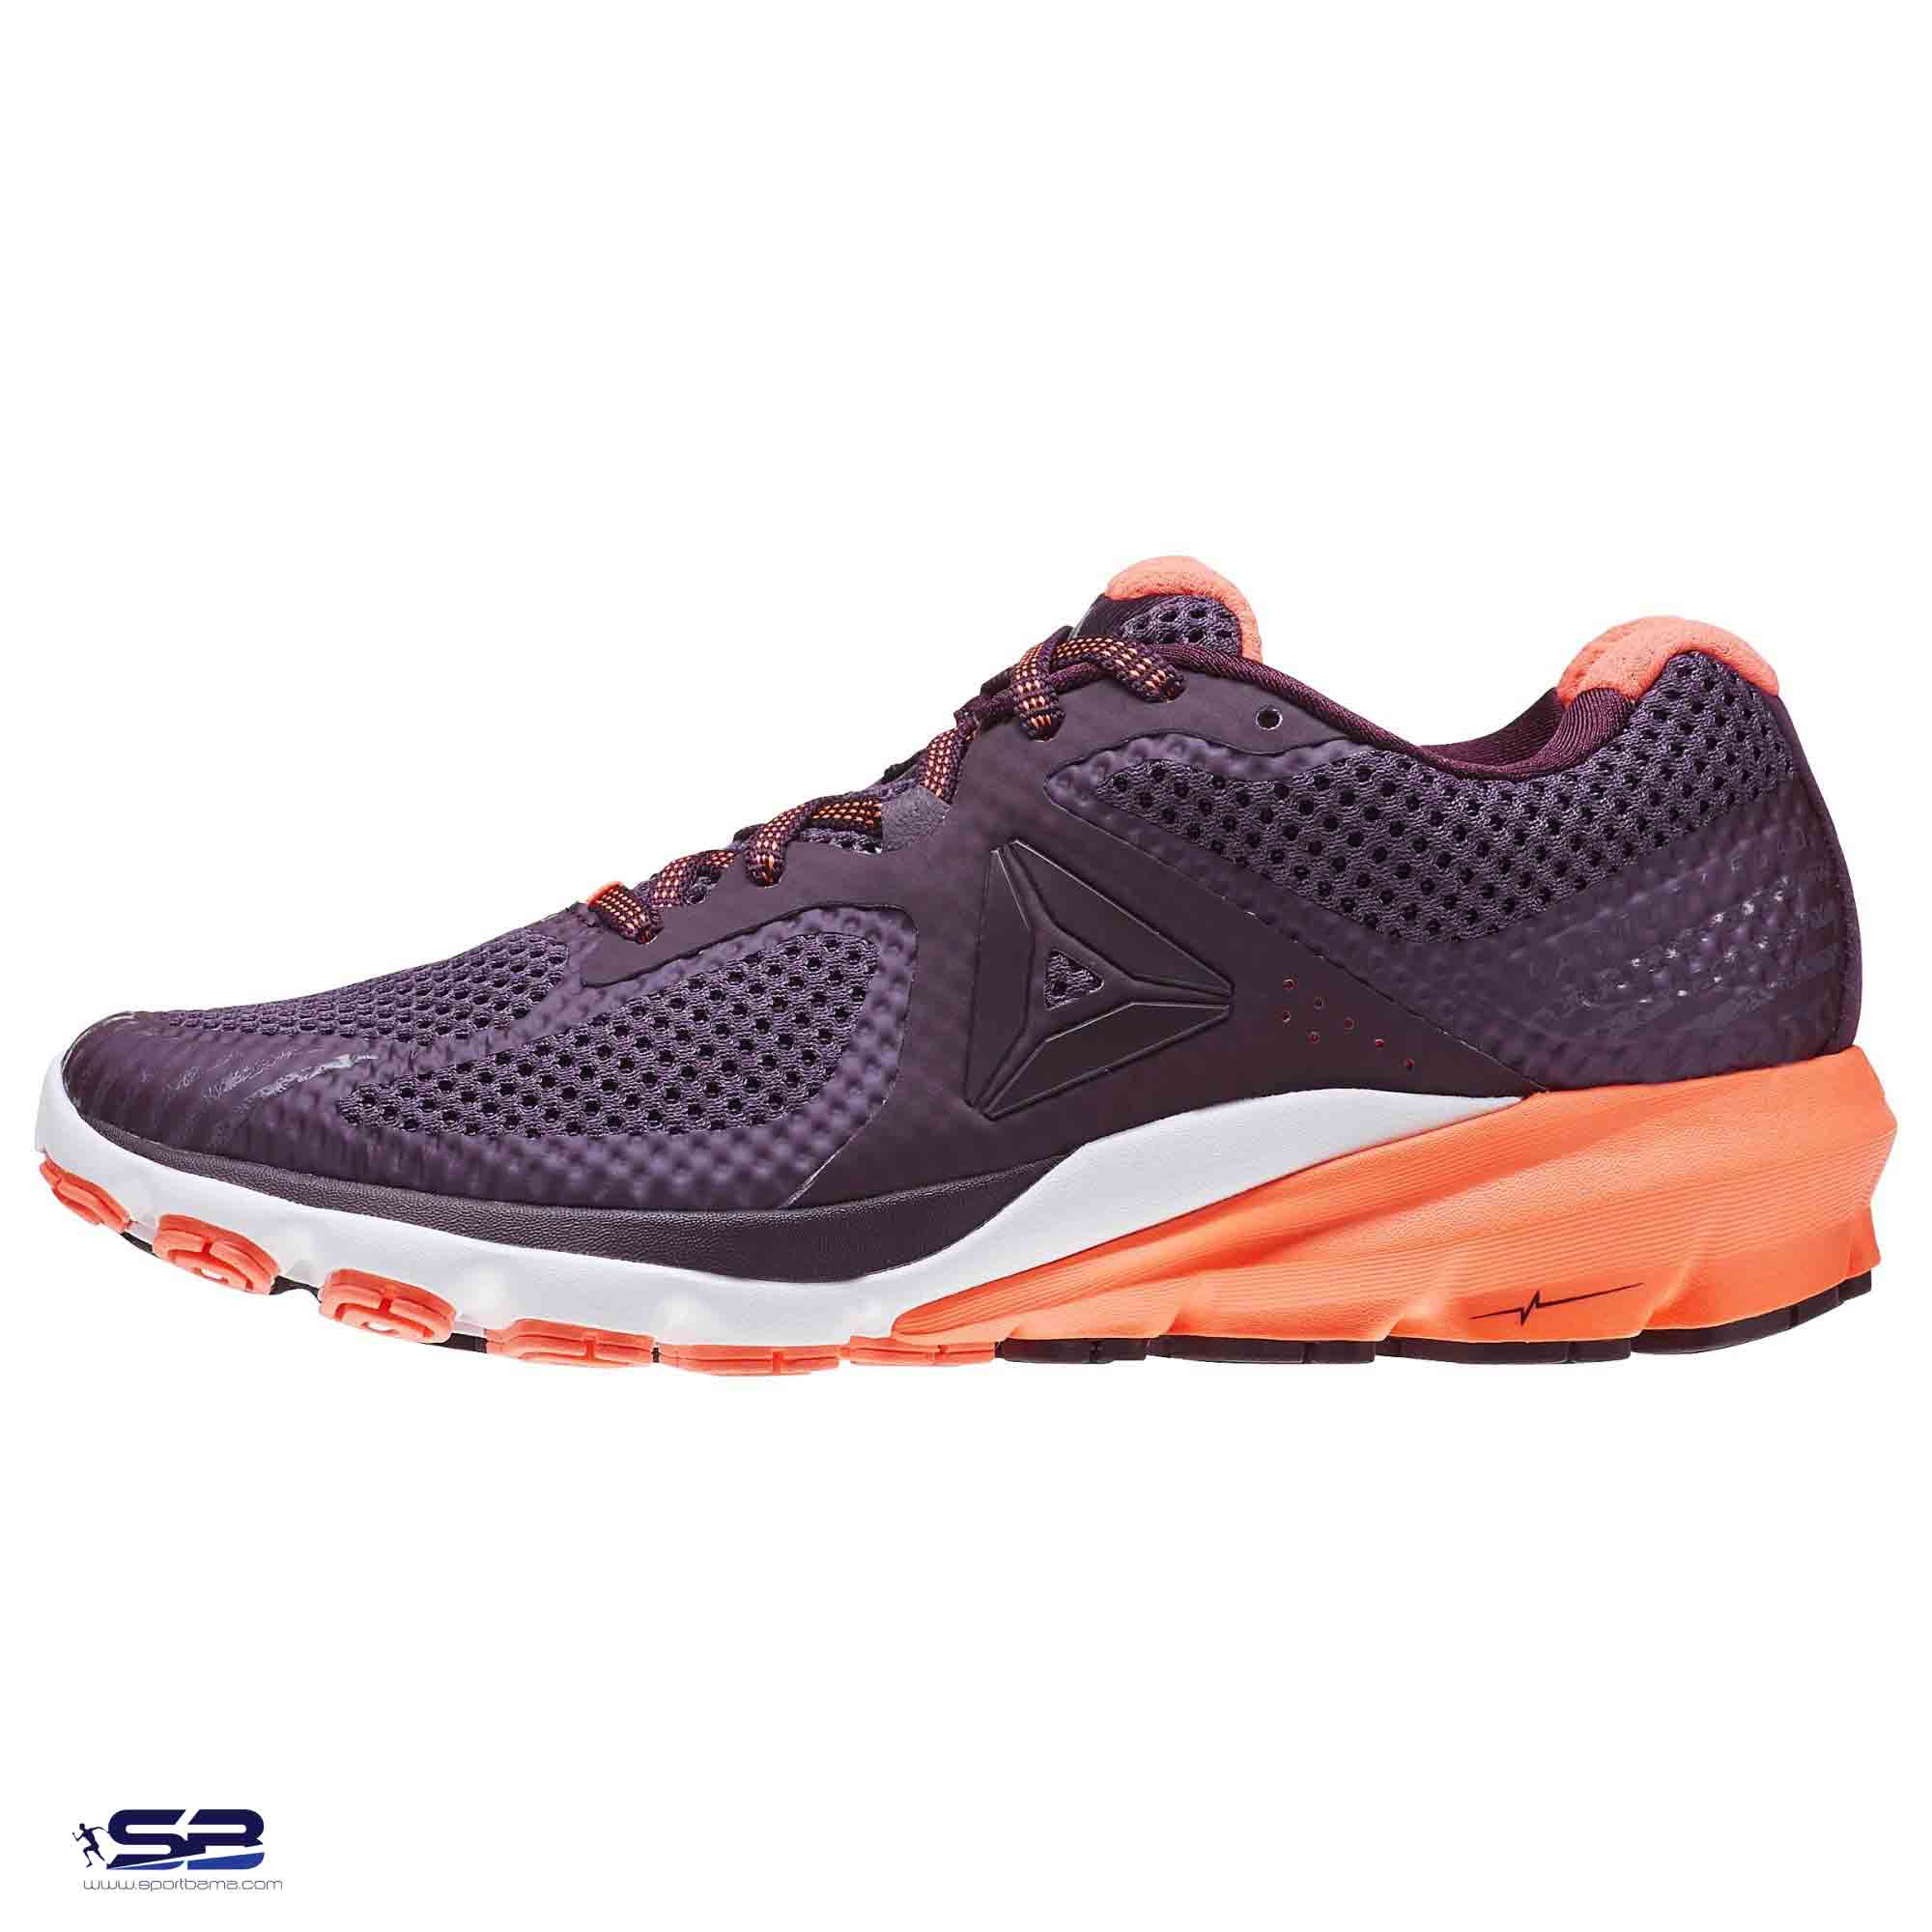  خرید  کفش کتانی اورجینال ریباک     Reebok Running Shoes BD5146  